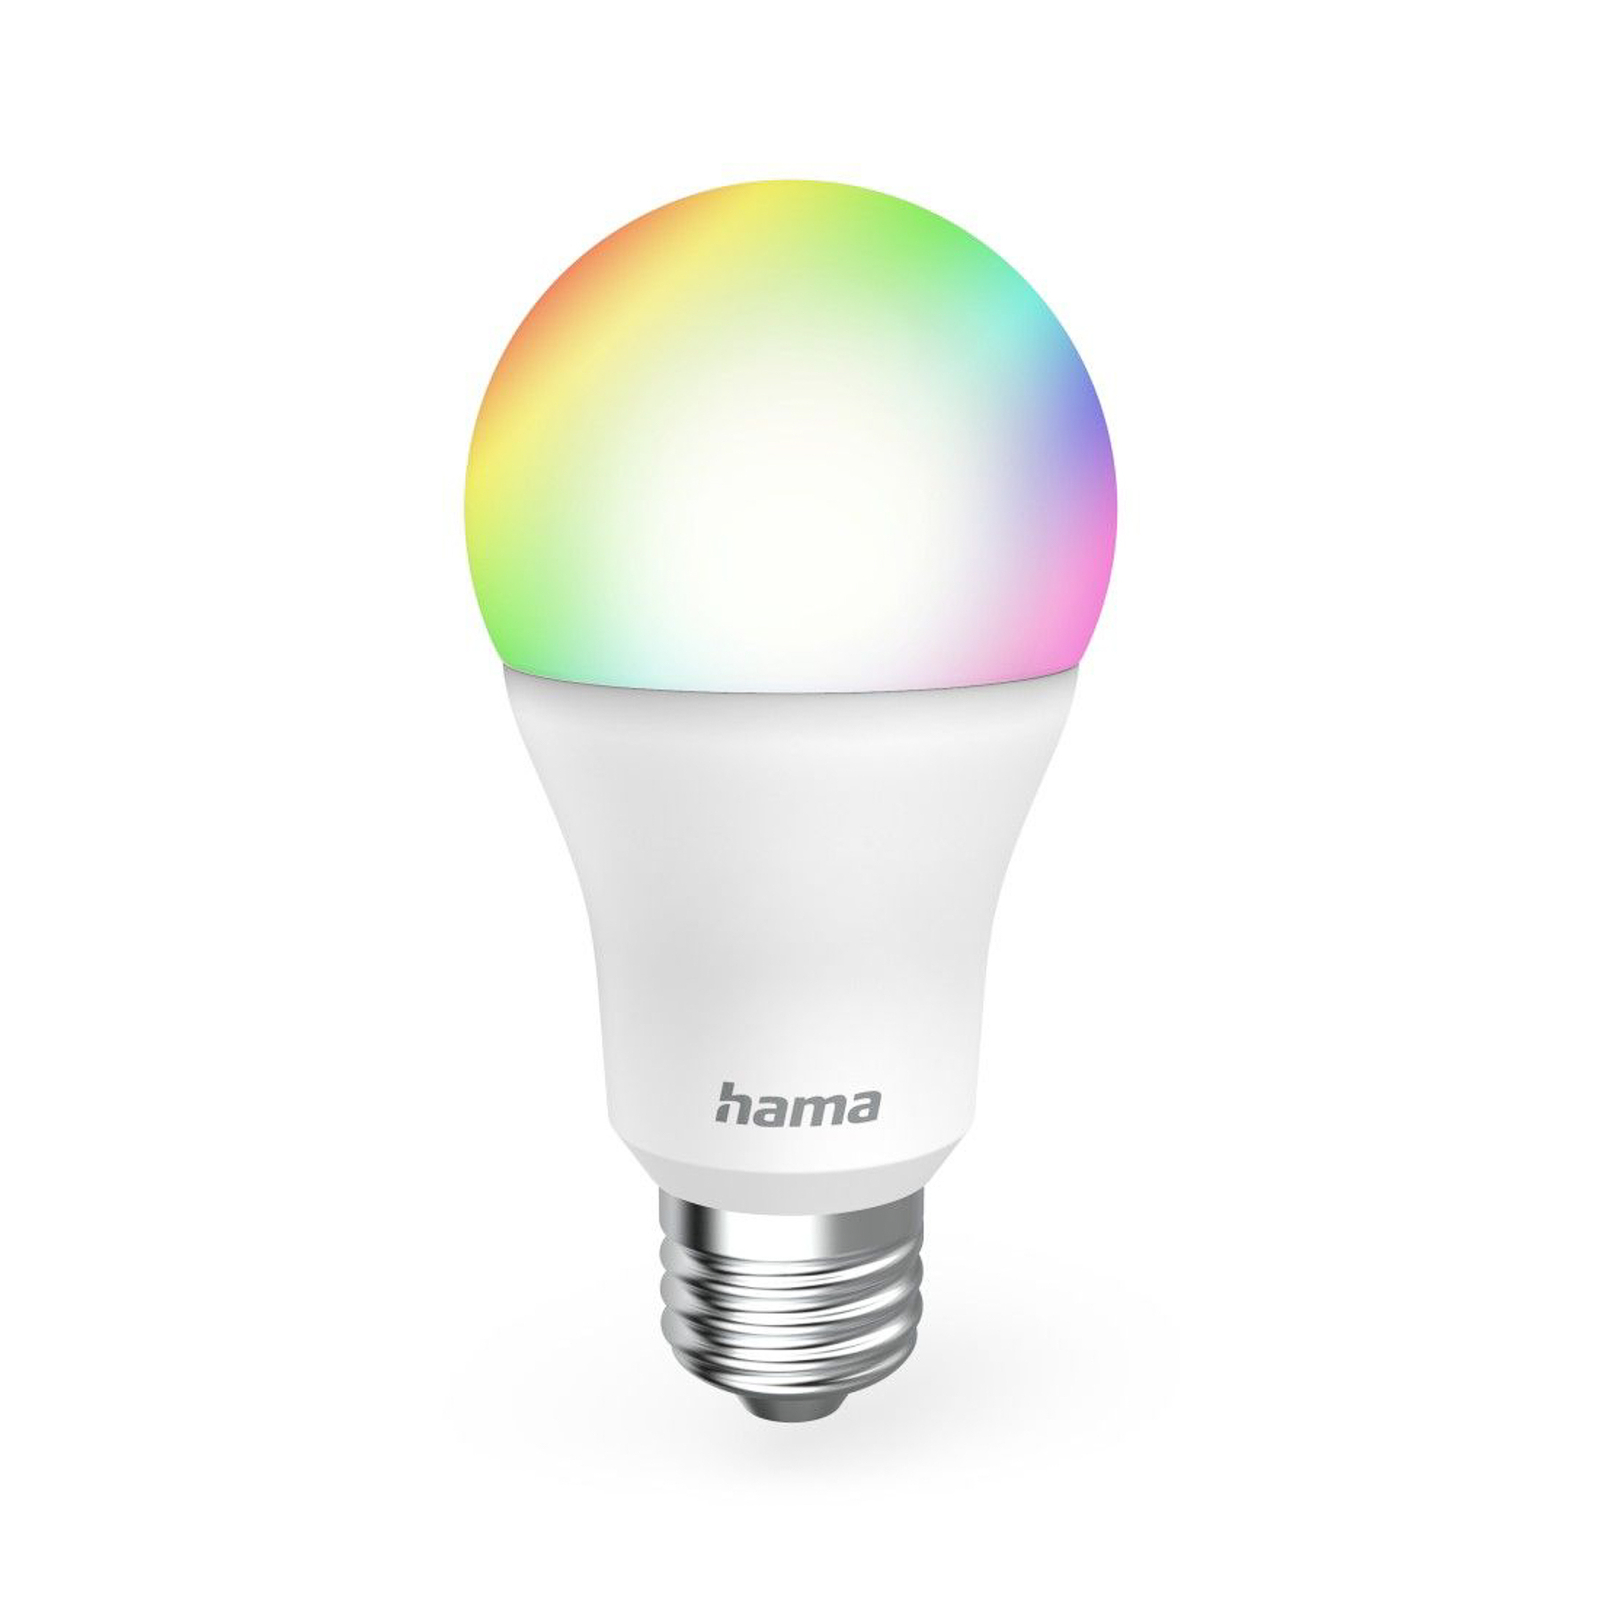 Hama Ampoule LED Smart claire E27 A60 WLAN Matter 9W RGBW